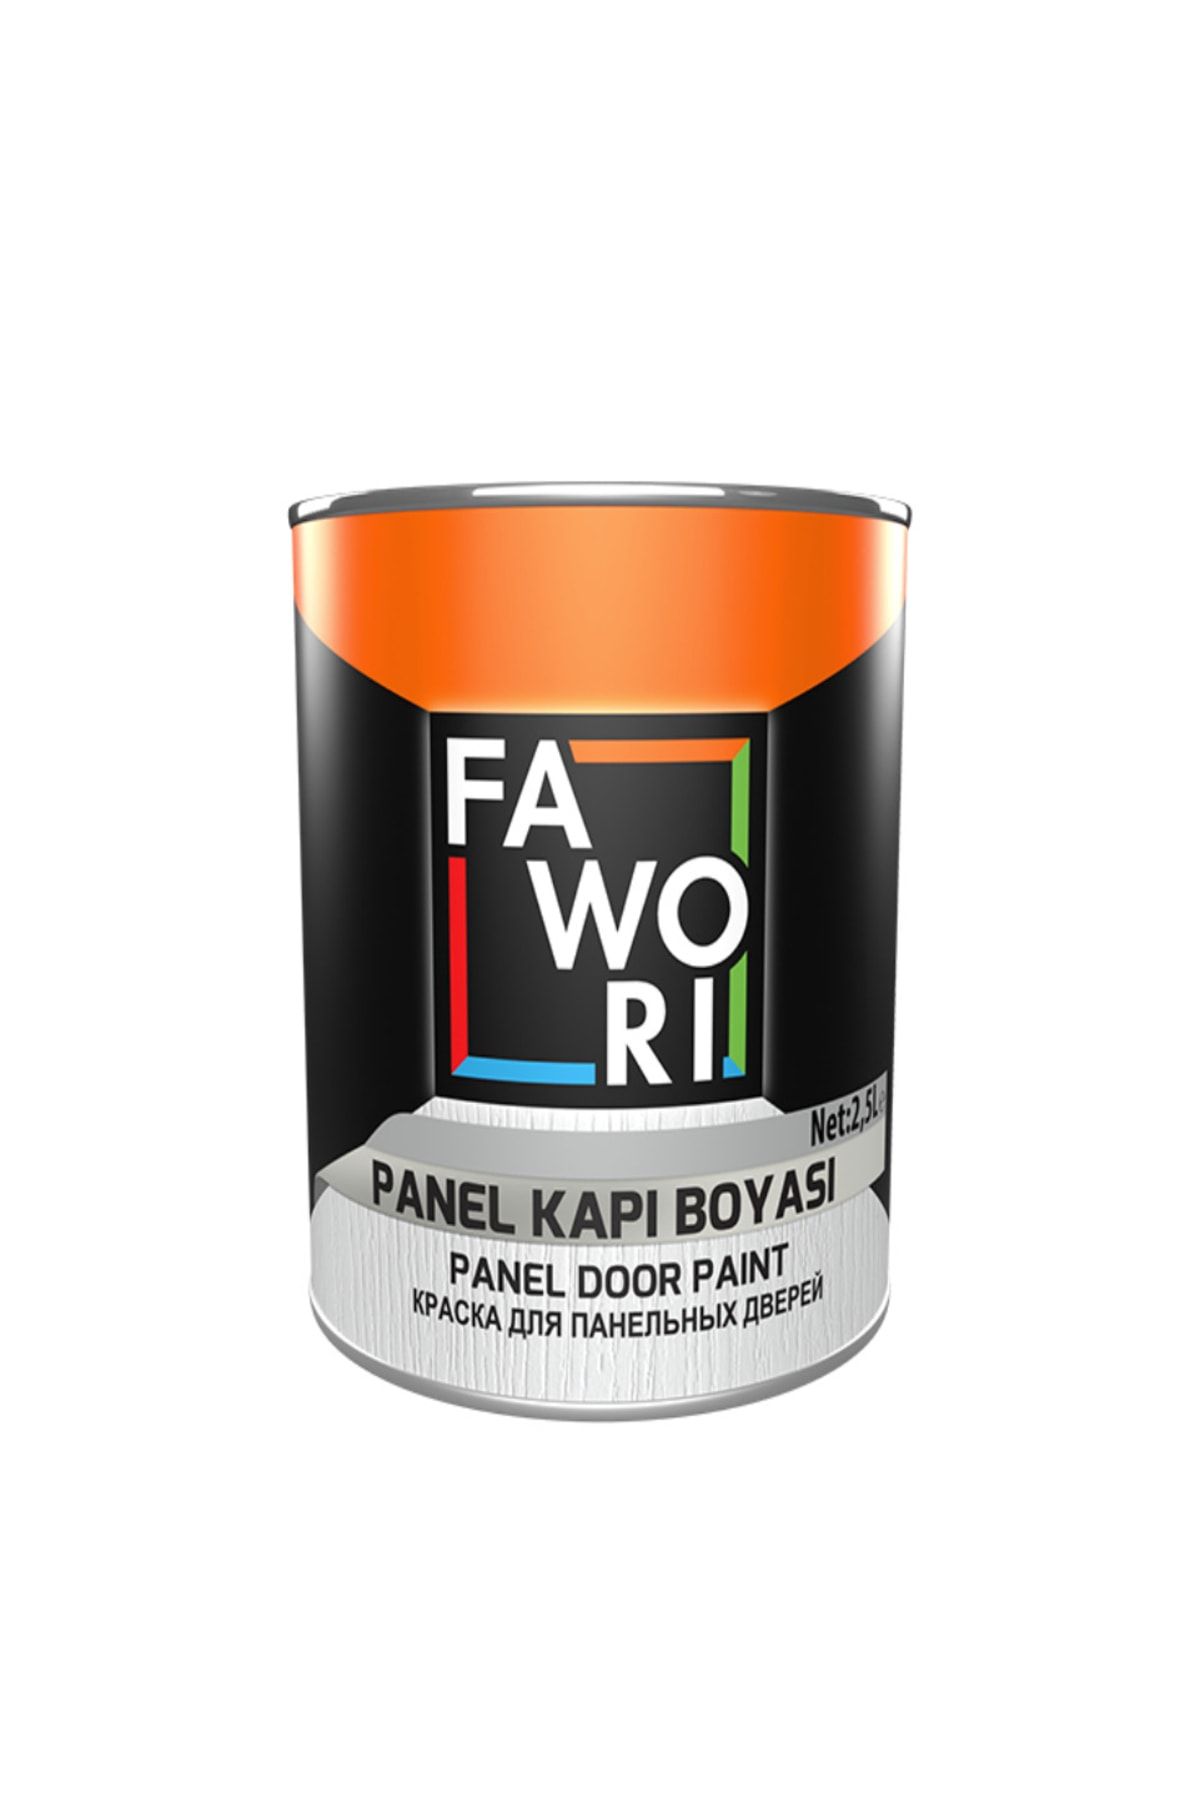 Fawori Su Bazlı Panel Kapı Boyası ( Akrilik Boya ) 2,5 Lt - Kırık Beyaz